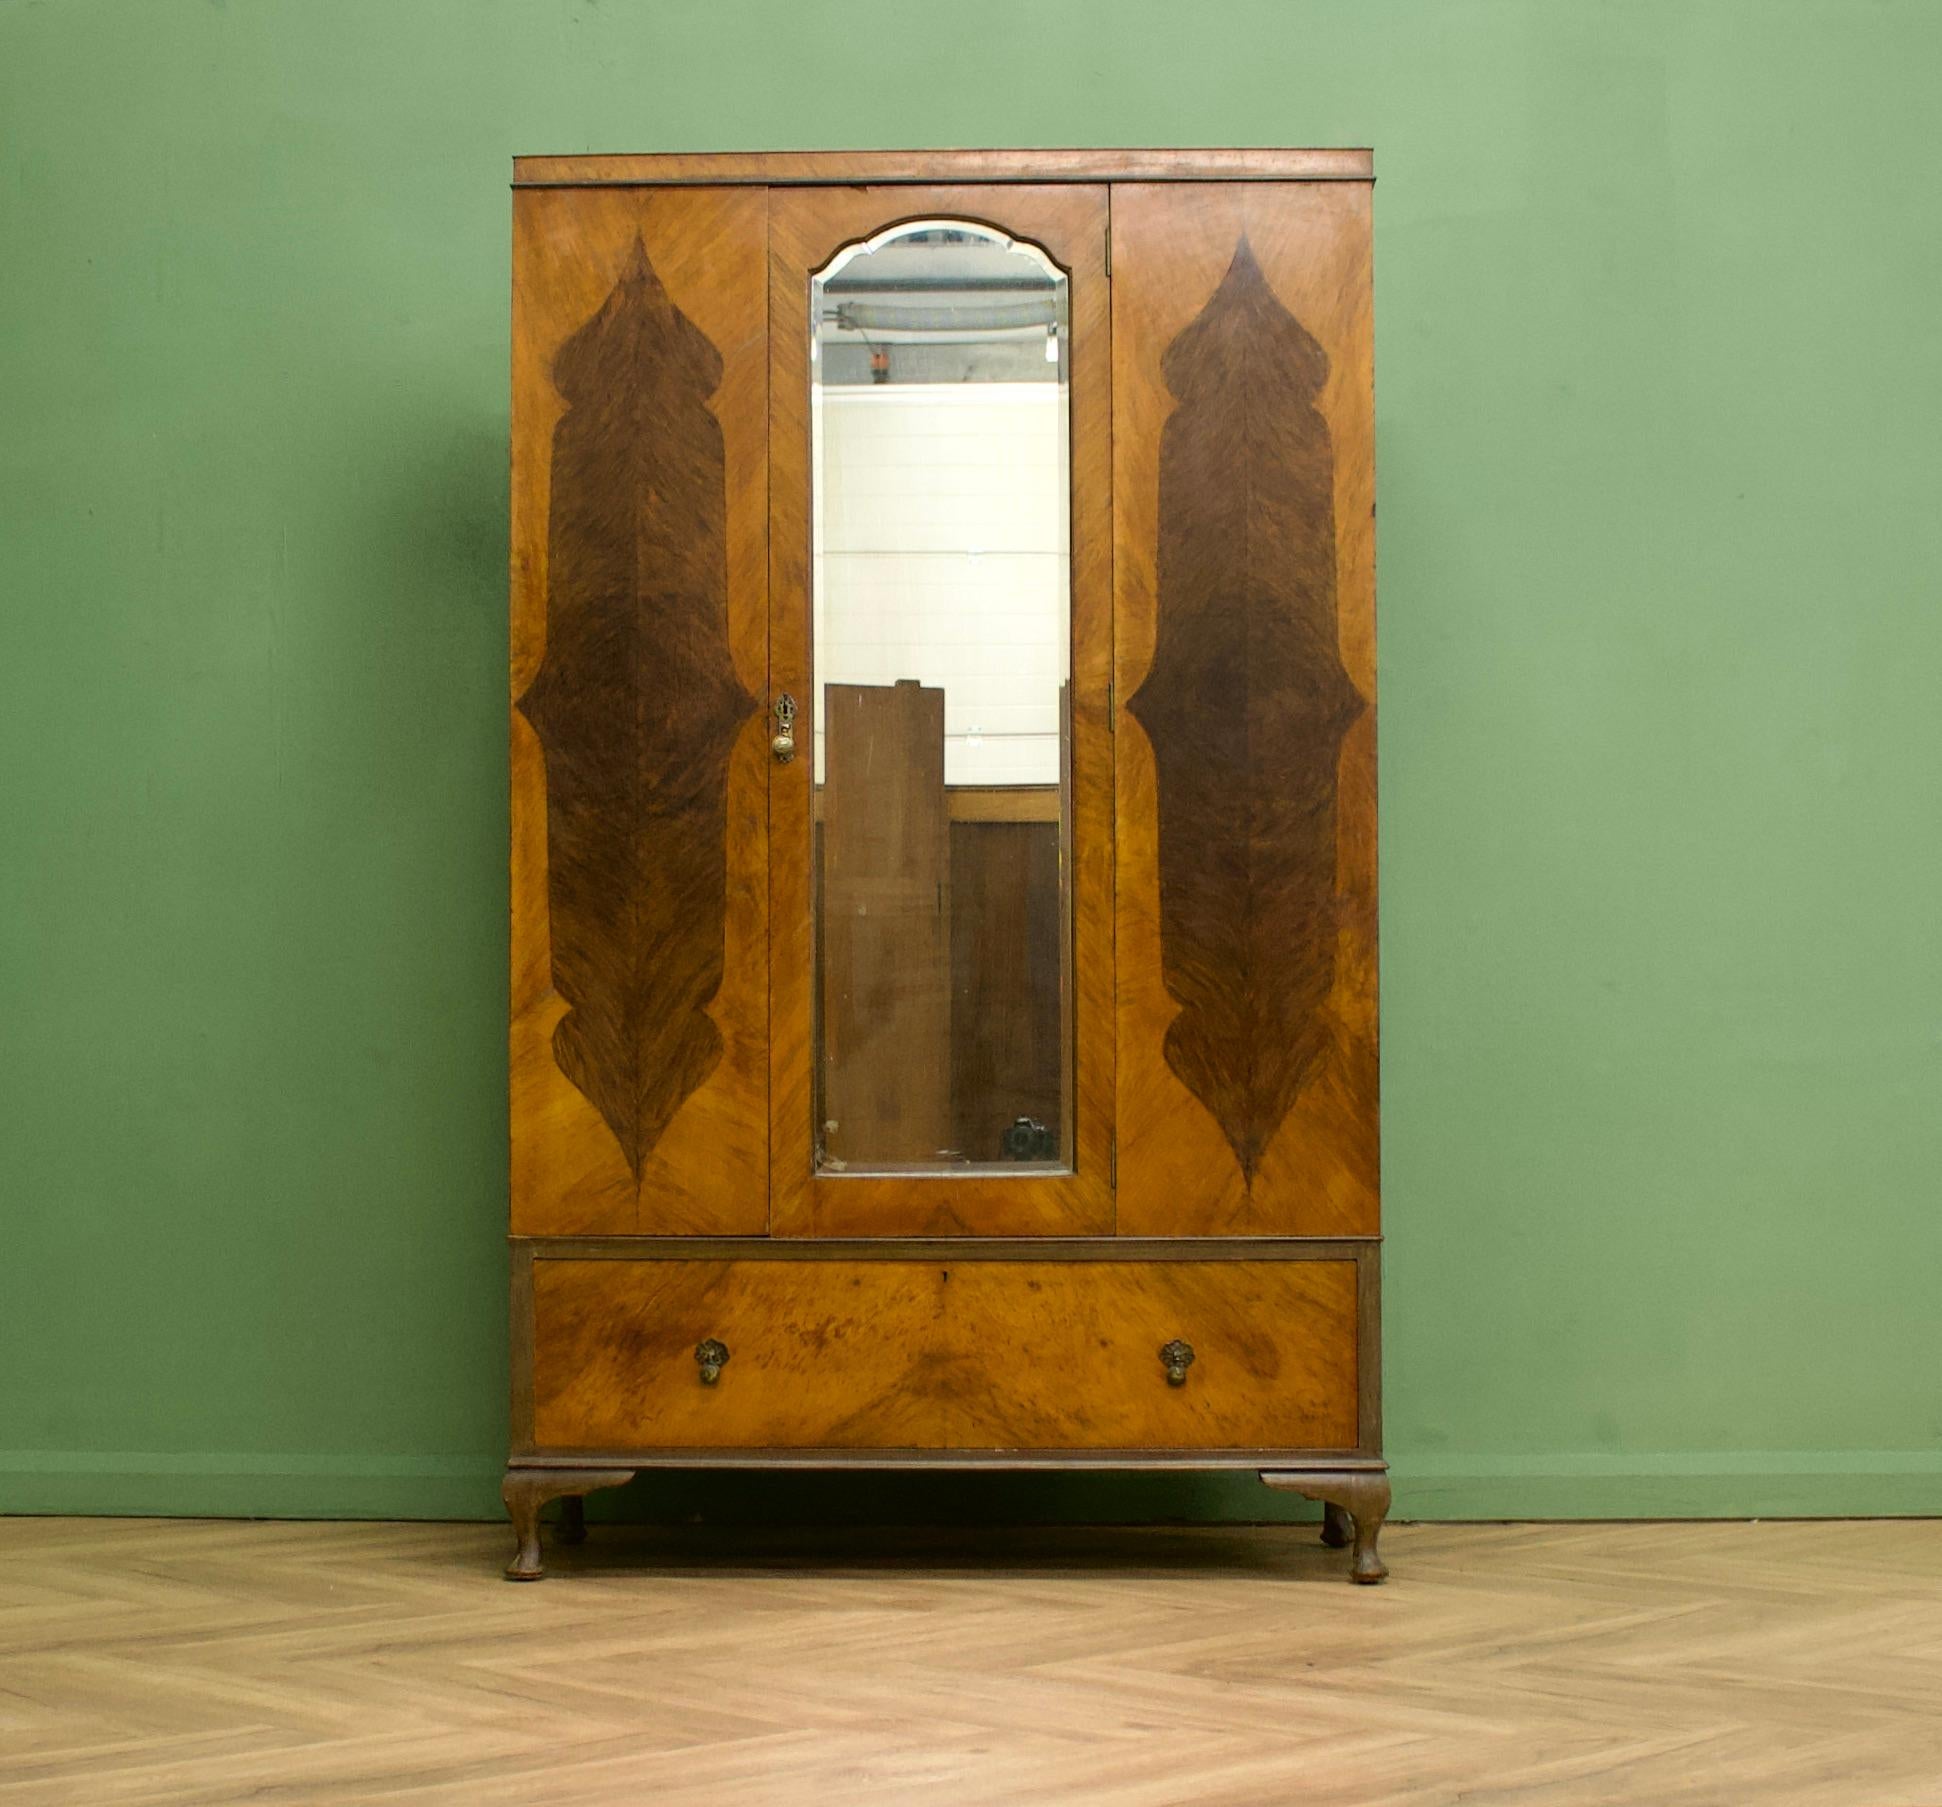 Ein Art-Deco-Schrank aus Nussbaumholz von der Qualitätsmöbelmanufaktur Jas Shoolbred - circa 1920er Jahre
Ausgestattet mit einer Kleiderstange und Kleiderhaken
In der unteren Schublade gibt es weiteren Stauraum